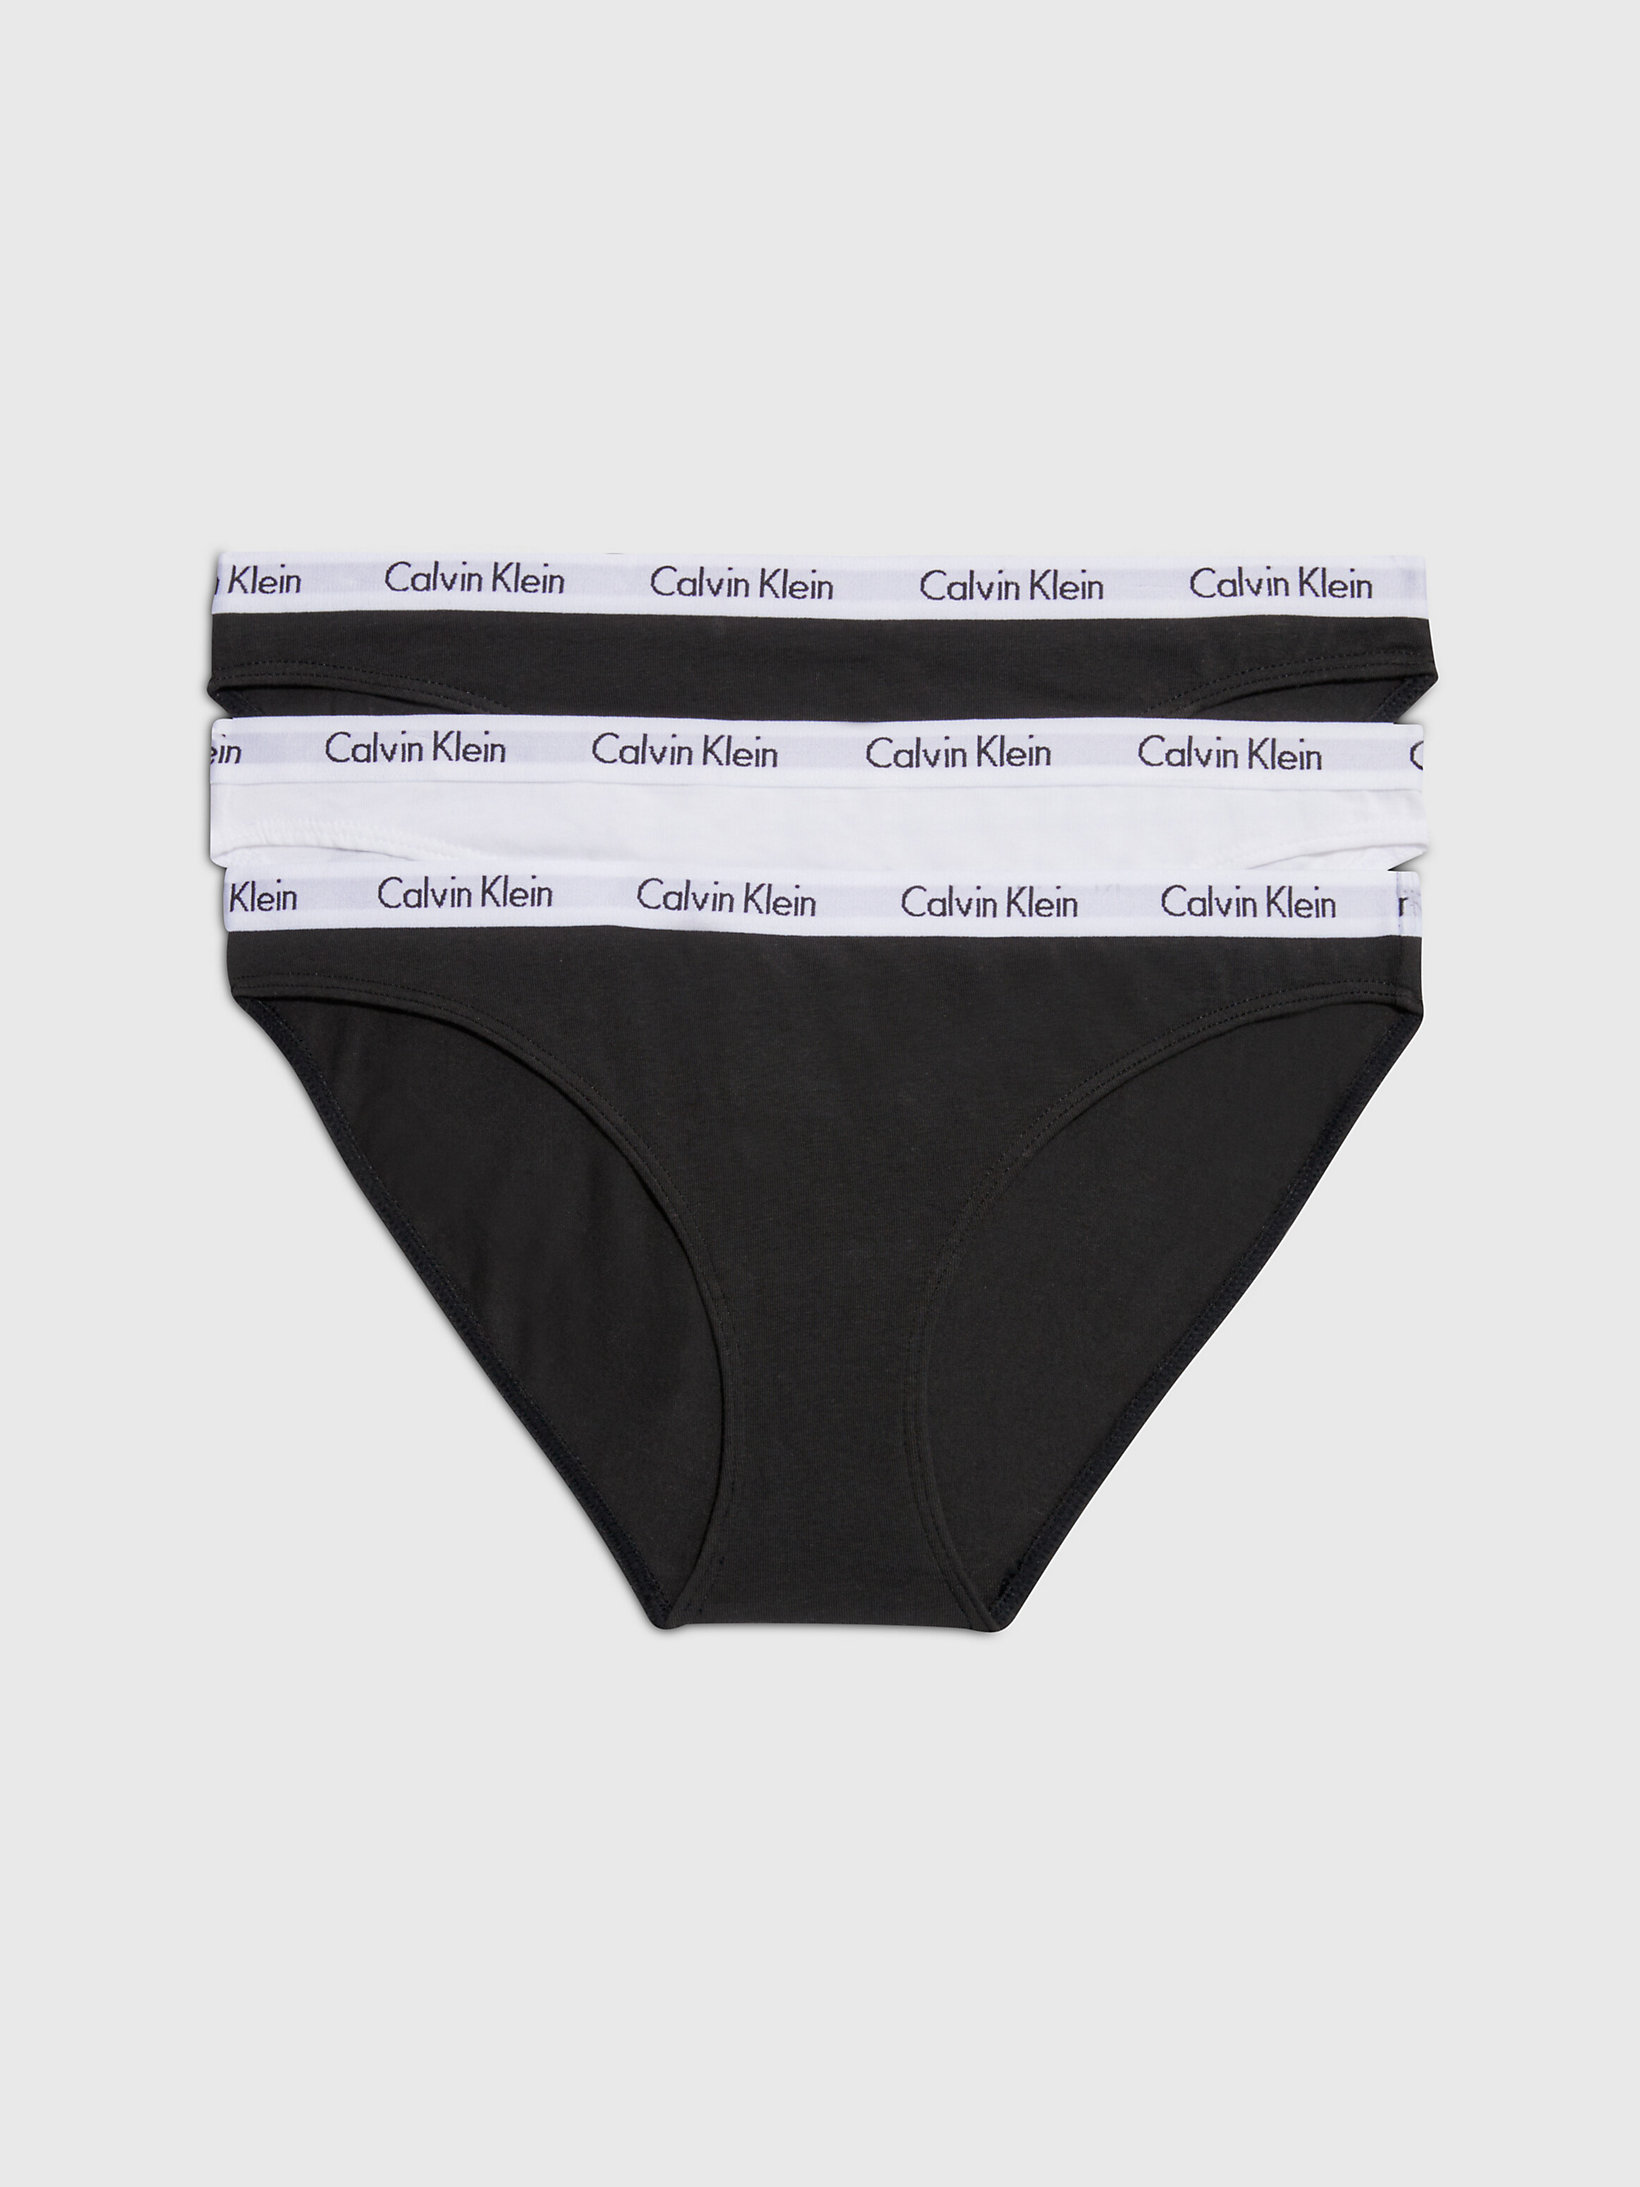 Black/white/black > 3er-Pack Slips – Carousel > undefined Damen - Calvin Klein